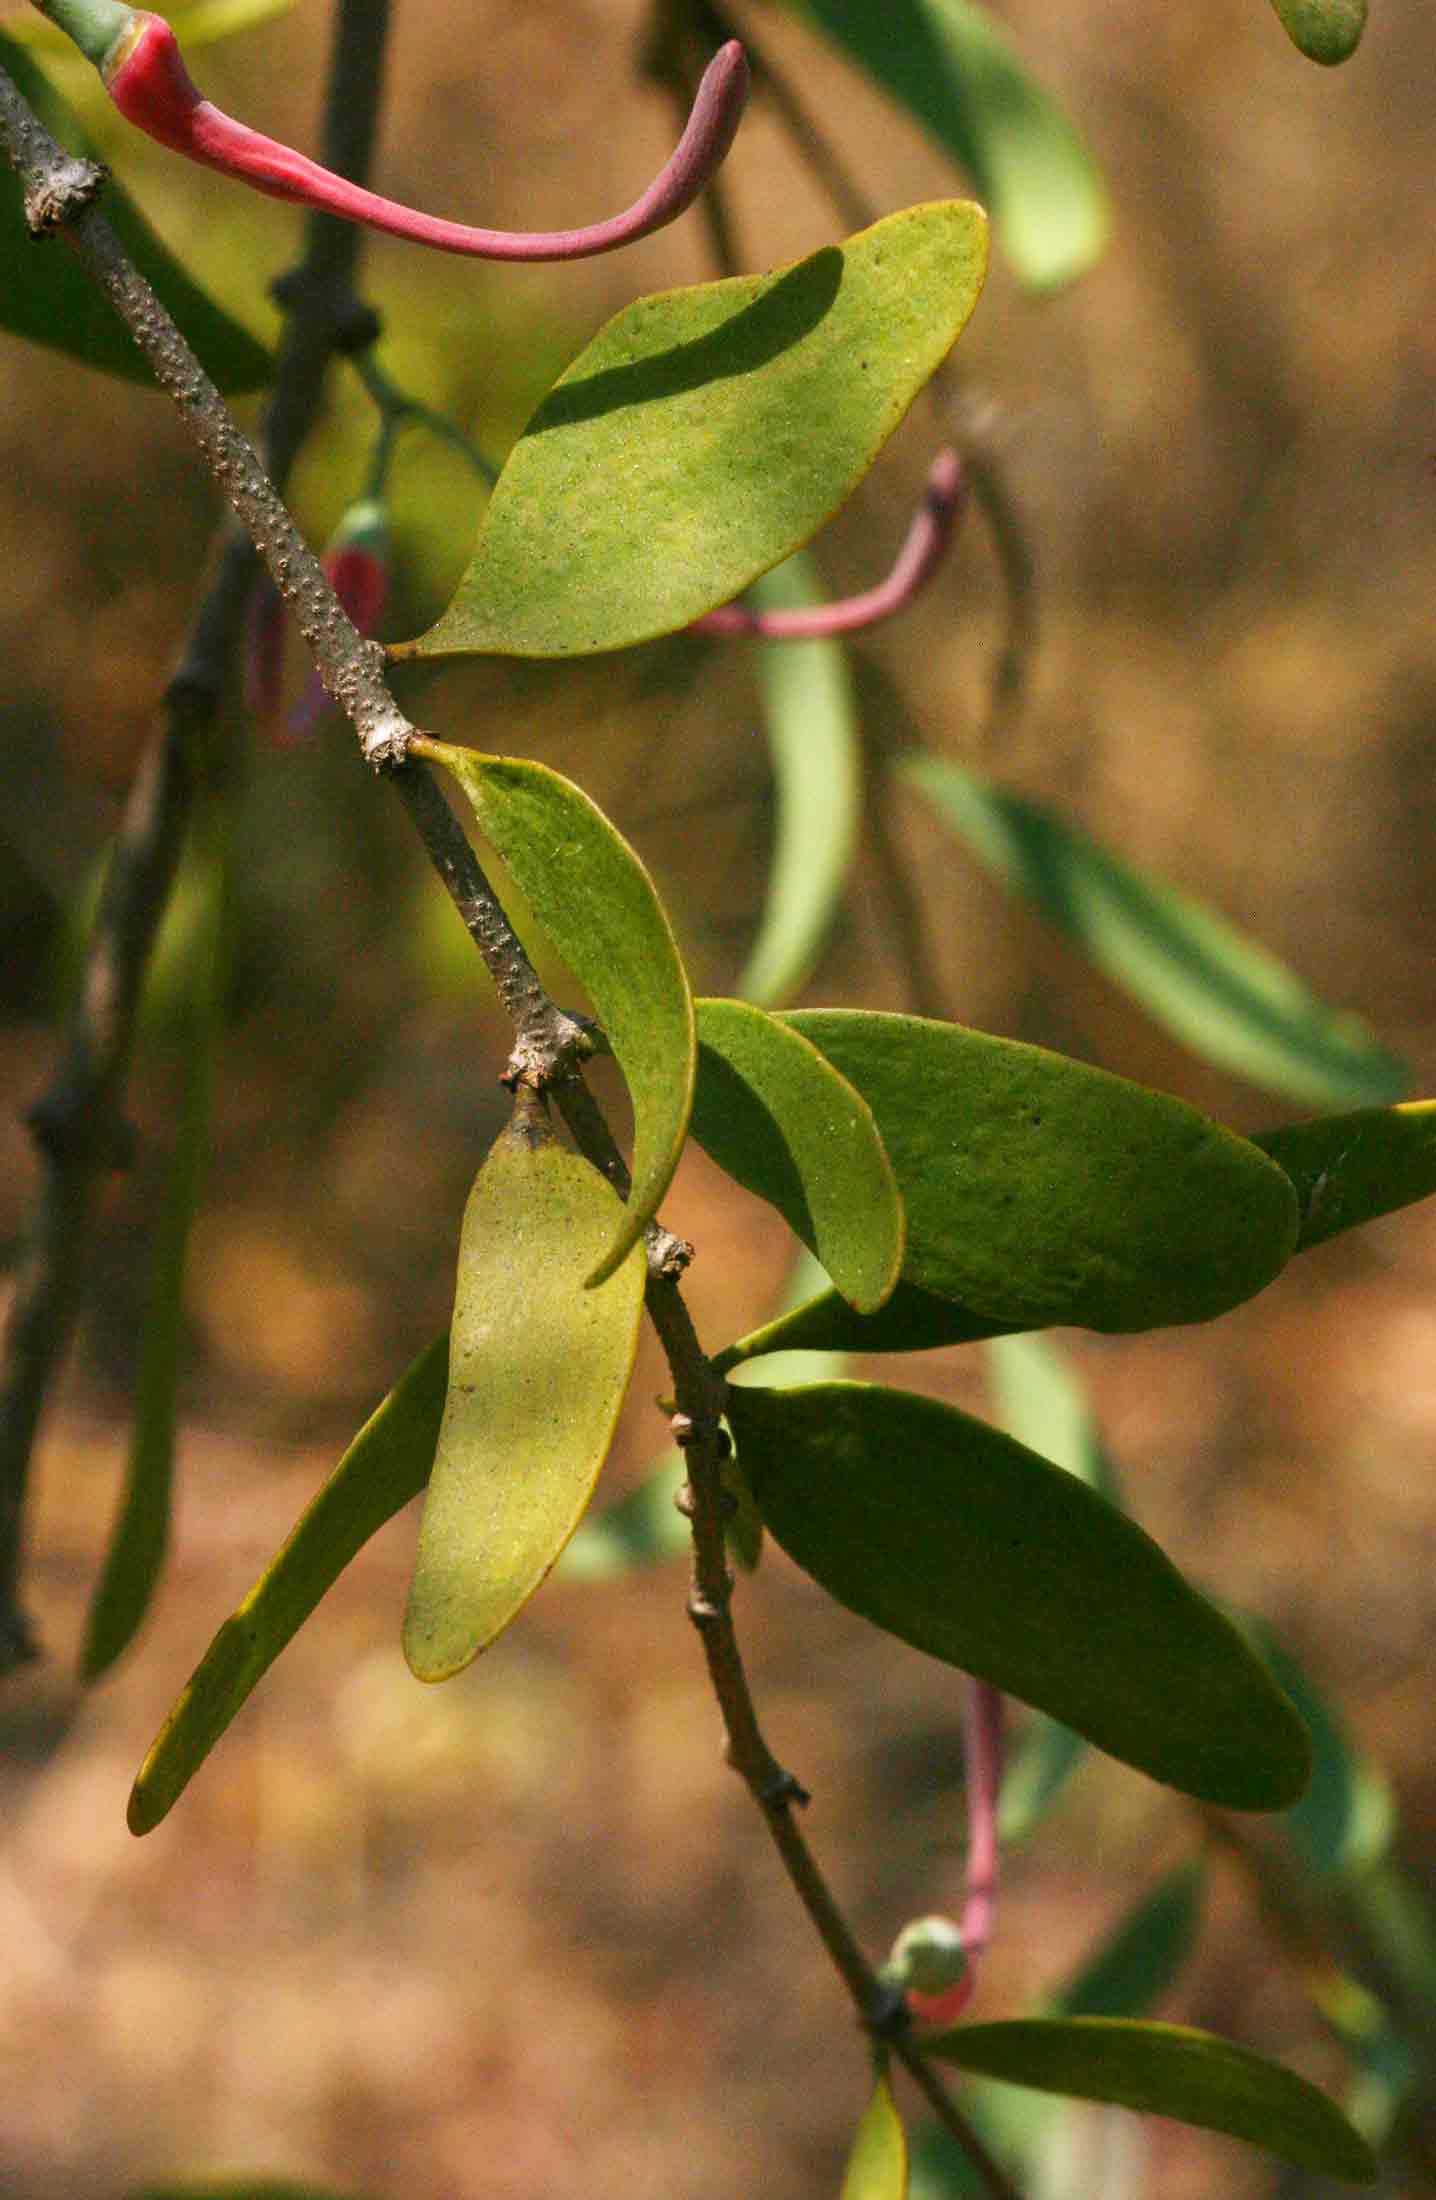 Plicosepalus kalachariensis